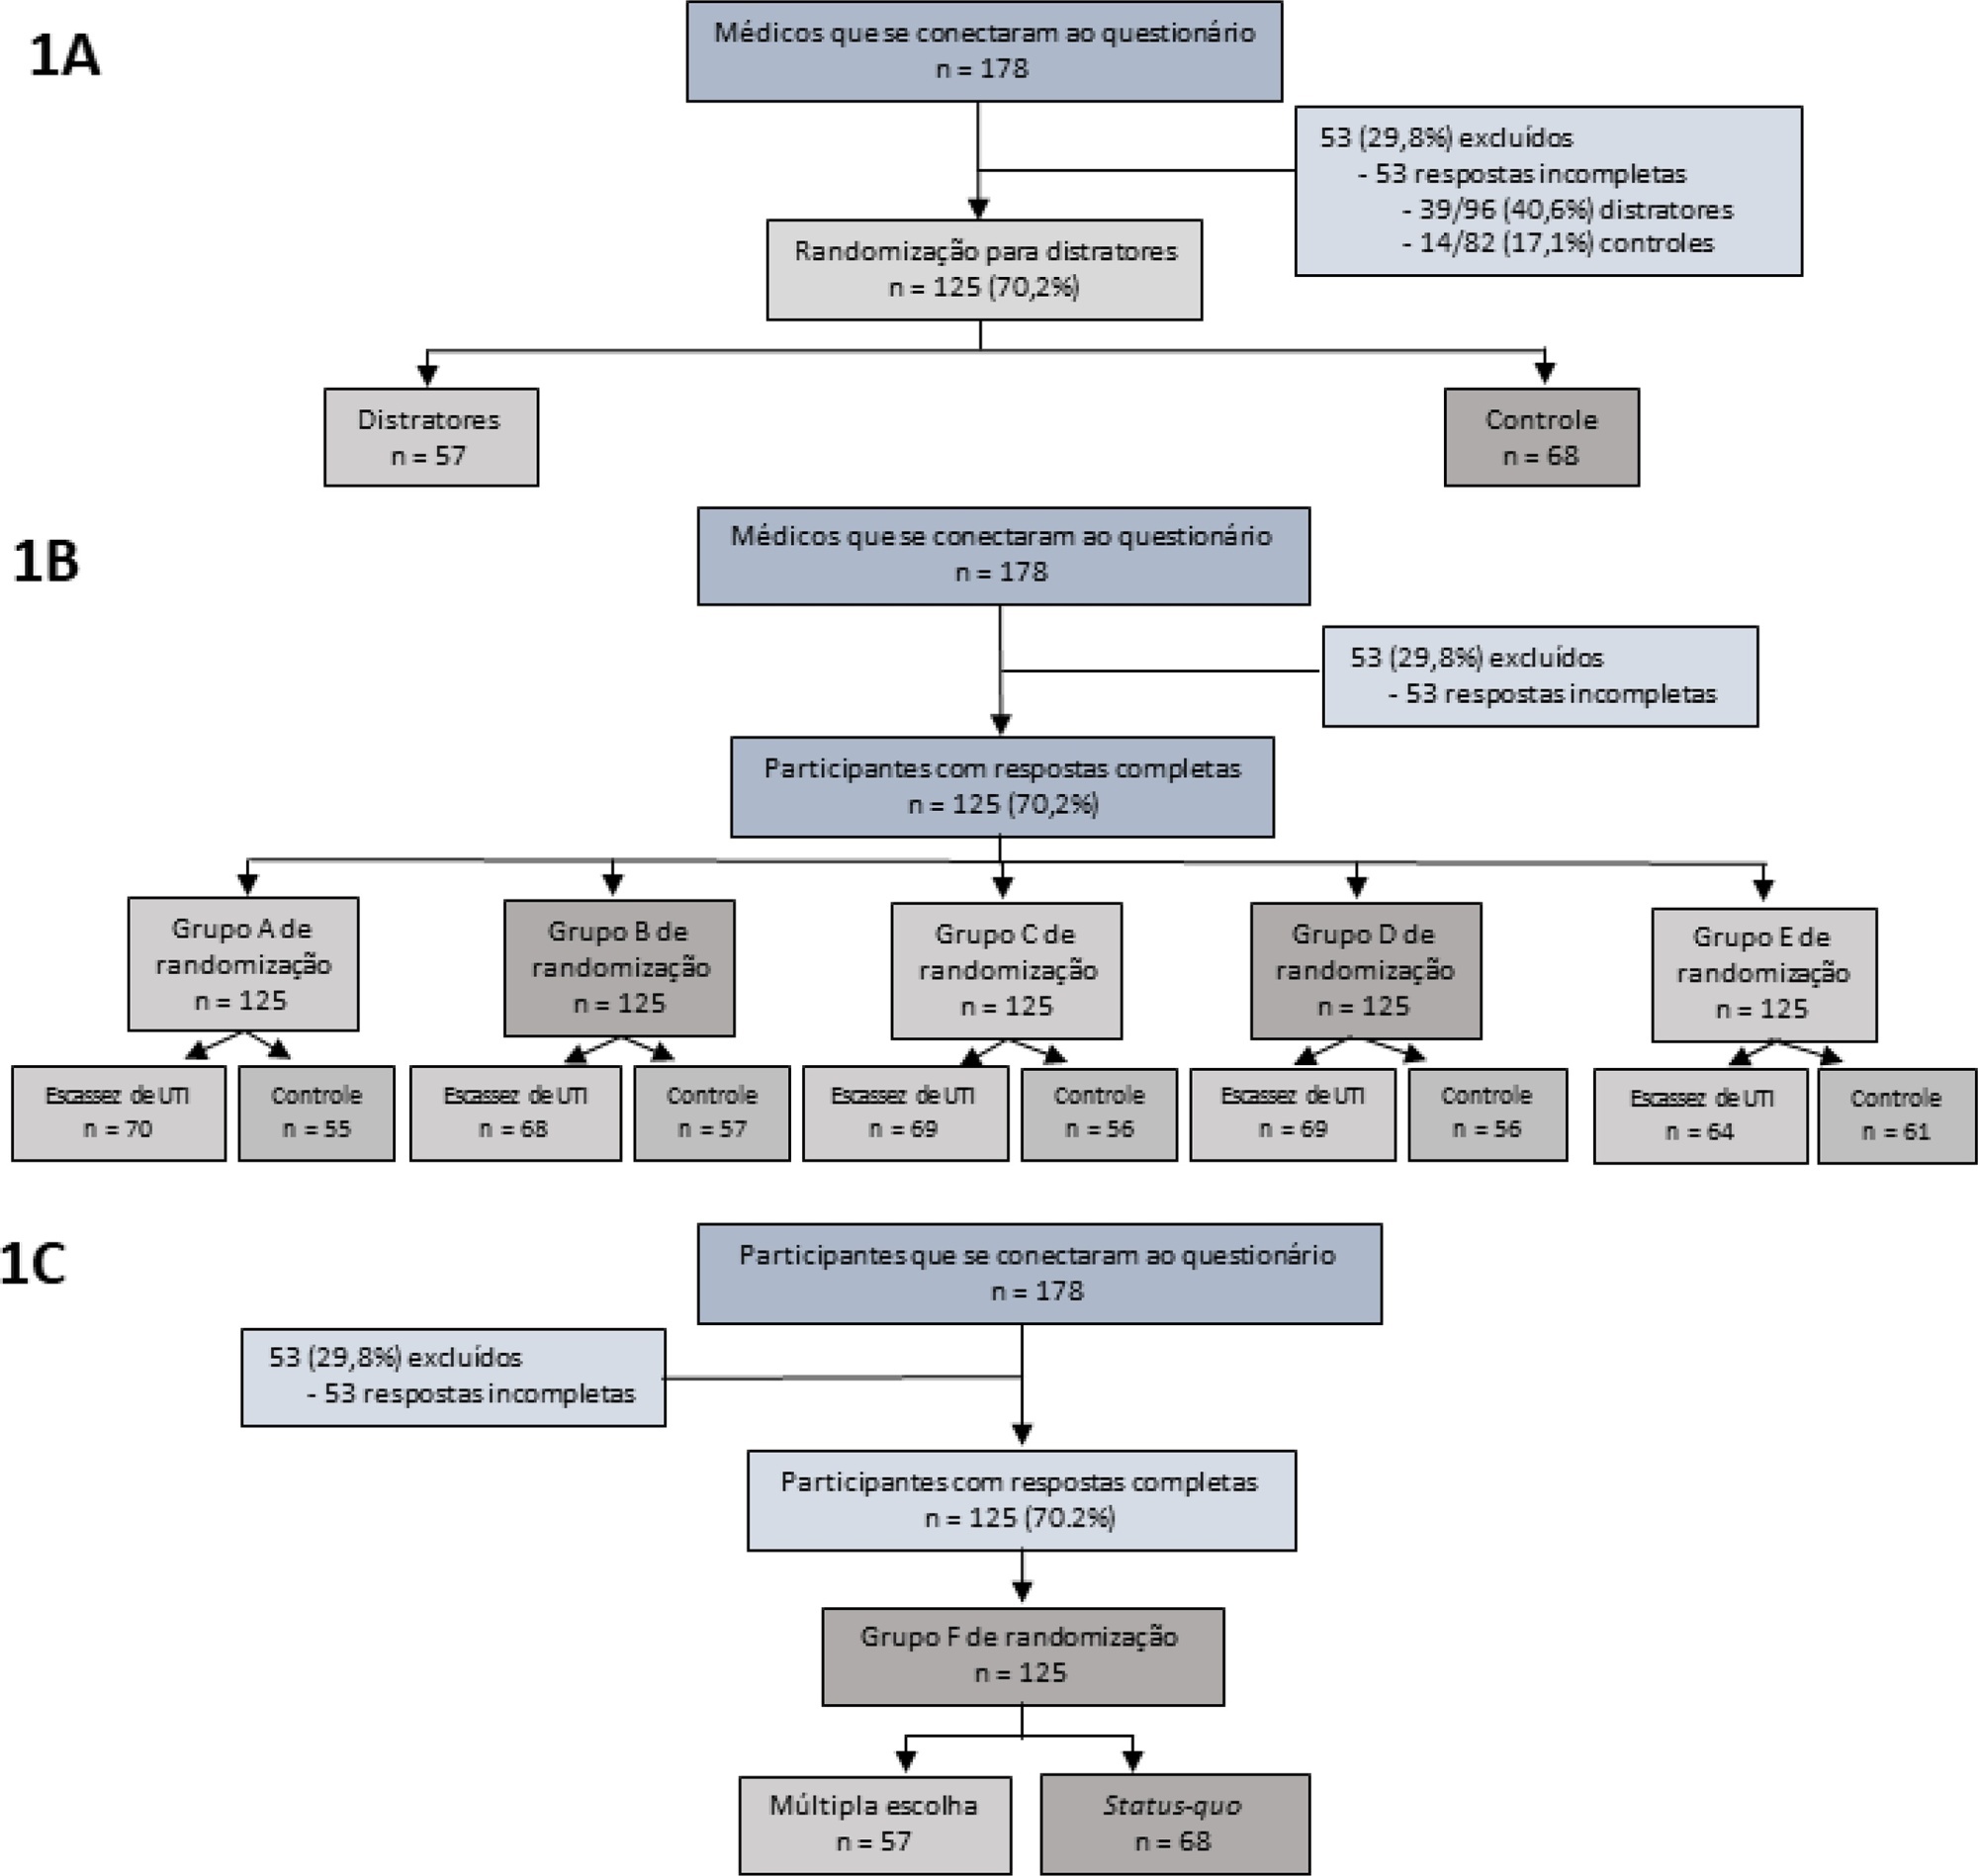 Impacto de fatores não clínicos nas decisões relacionadas à admissão em unidade de terapia intensiva: um ensaio randomizado com base em vinhetas (V-TRIAGE)